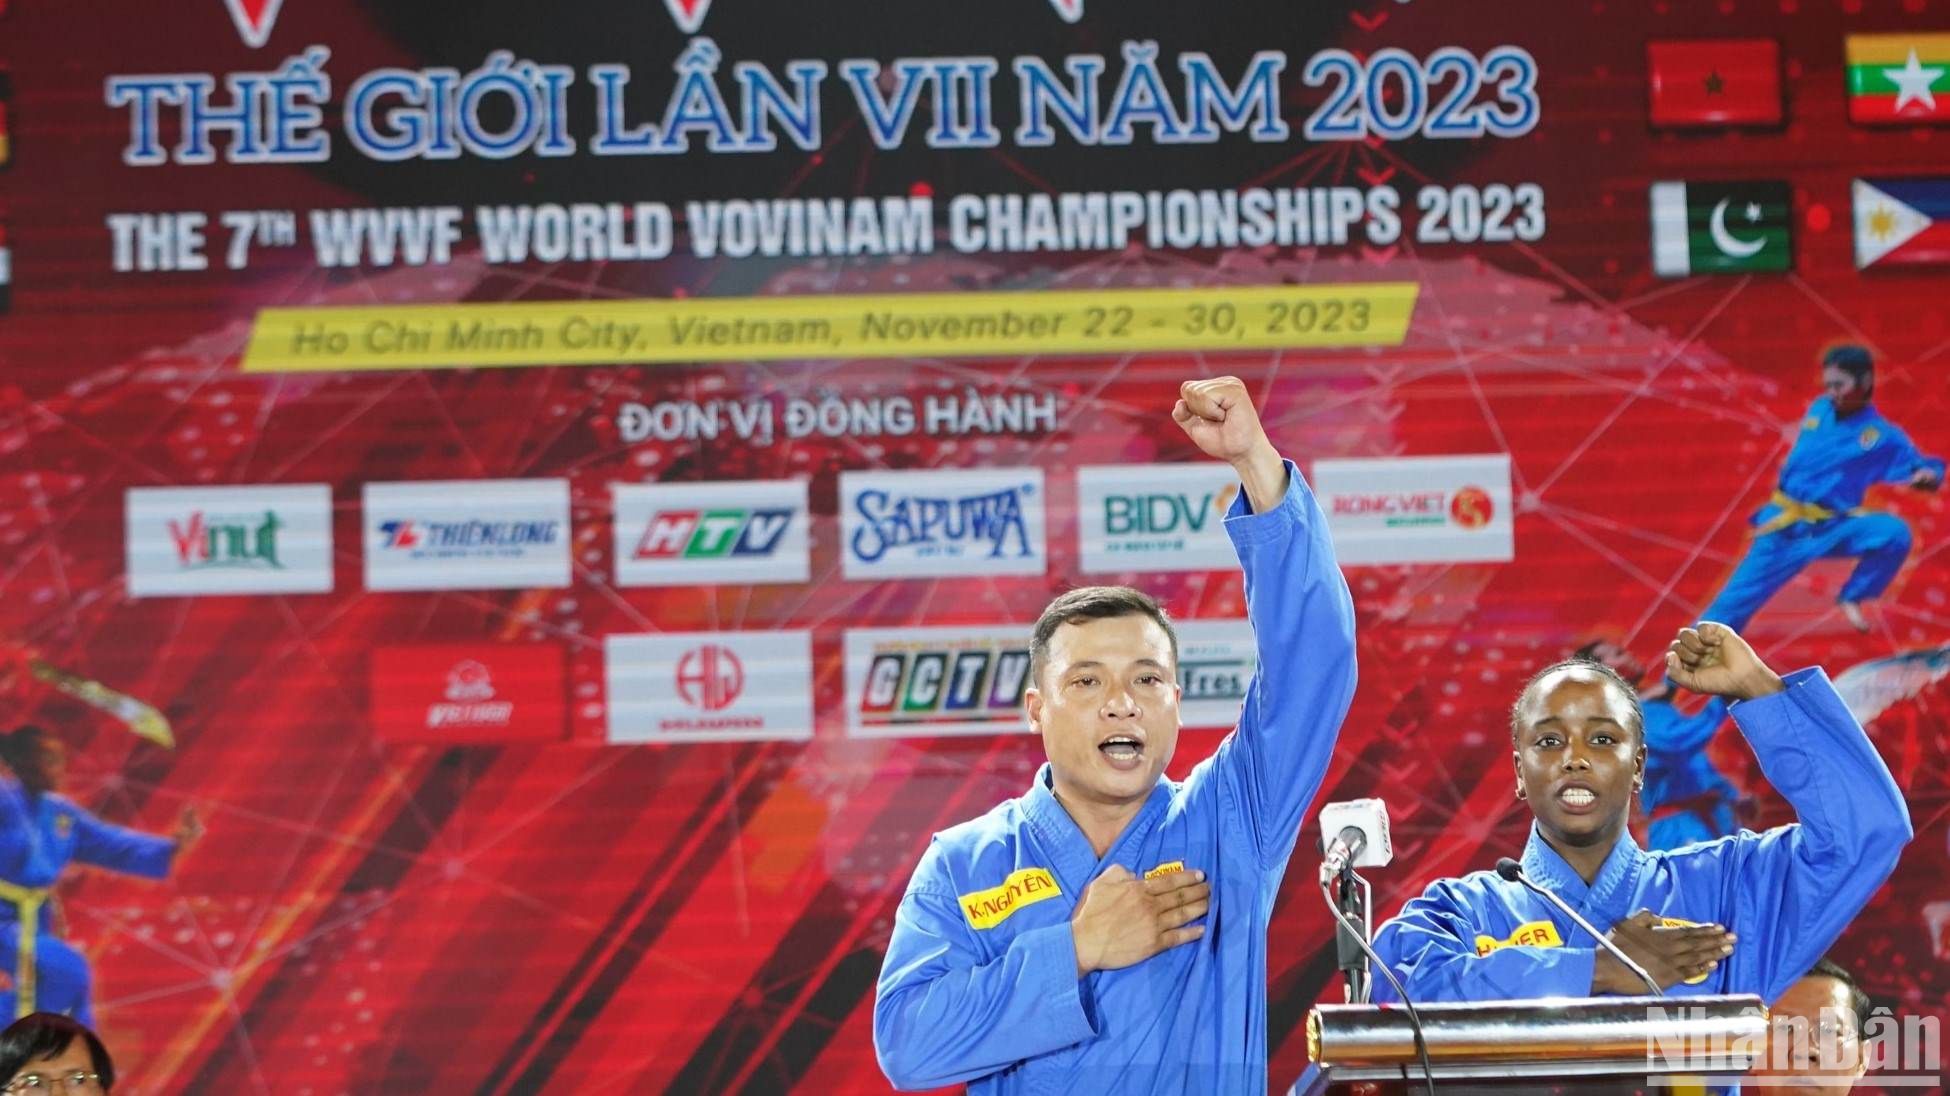 Khai mạc giải vô địch Vovinam thế giới lần thứ VII tại Việt Nam ảnh 1